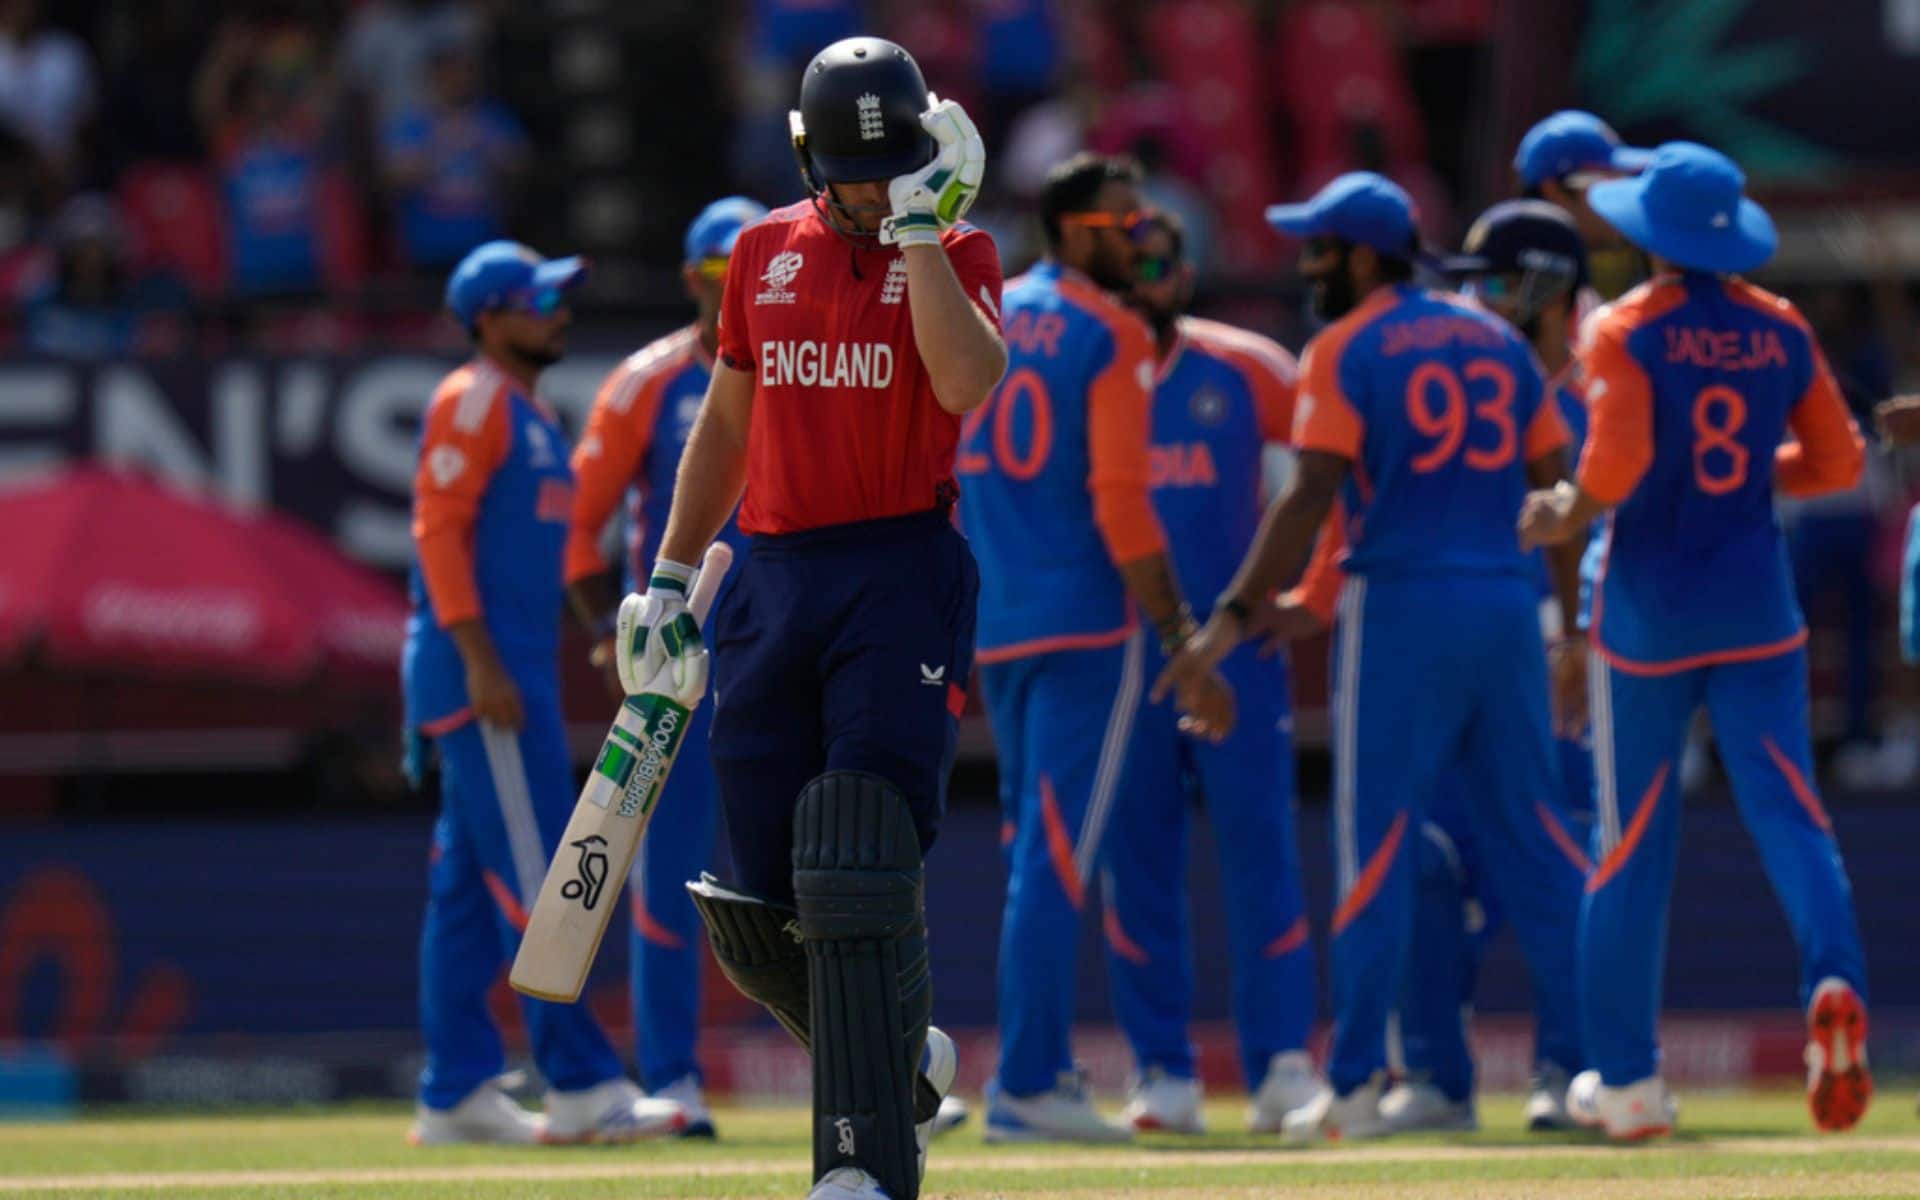 ‘भारत ने हमें मात दी…’: रोहित शर्मा एंड कंपनी से इंग्लैंड की टी20 विश्व कप सेमीफाइनल हार के बाद जोस बटलर